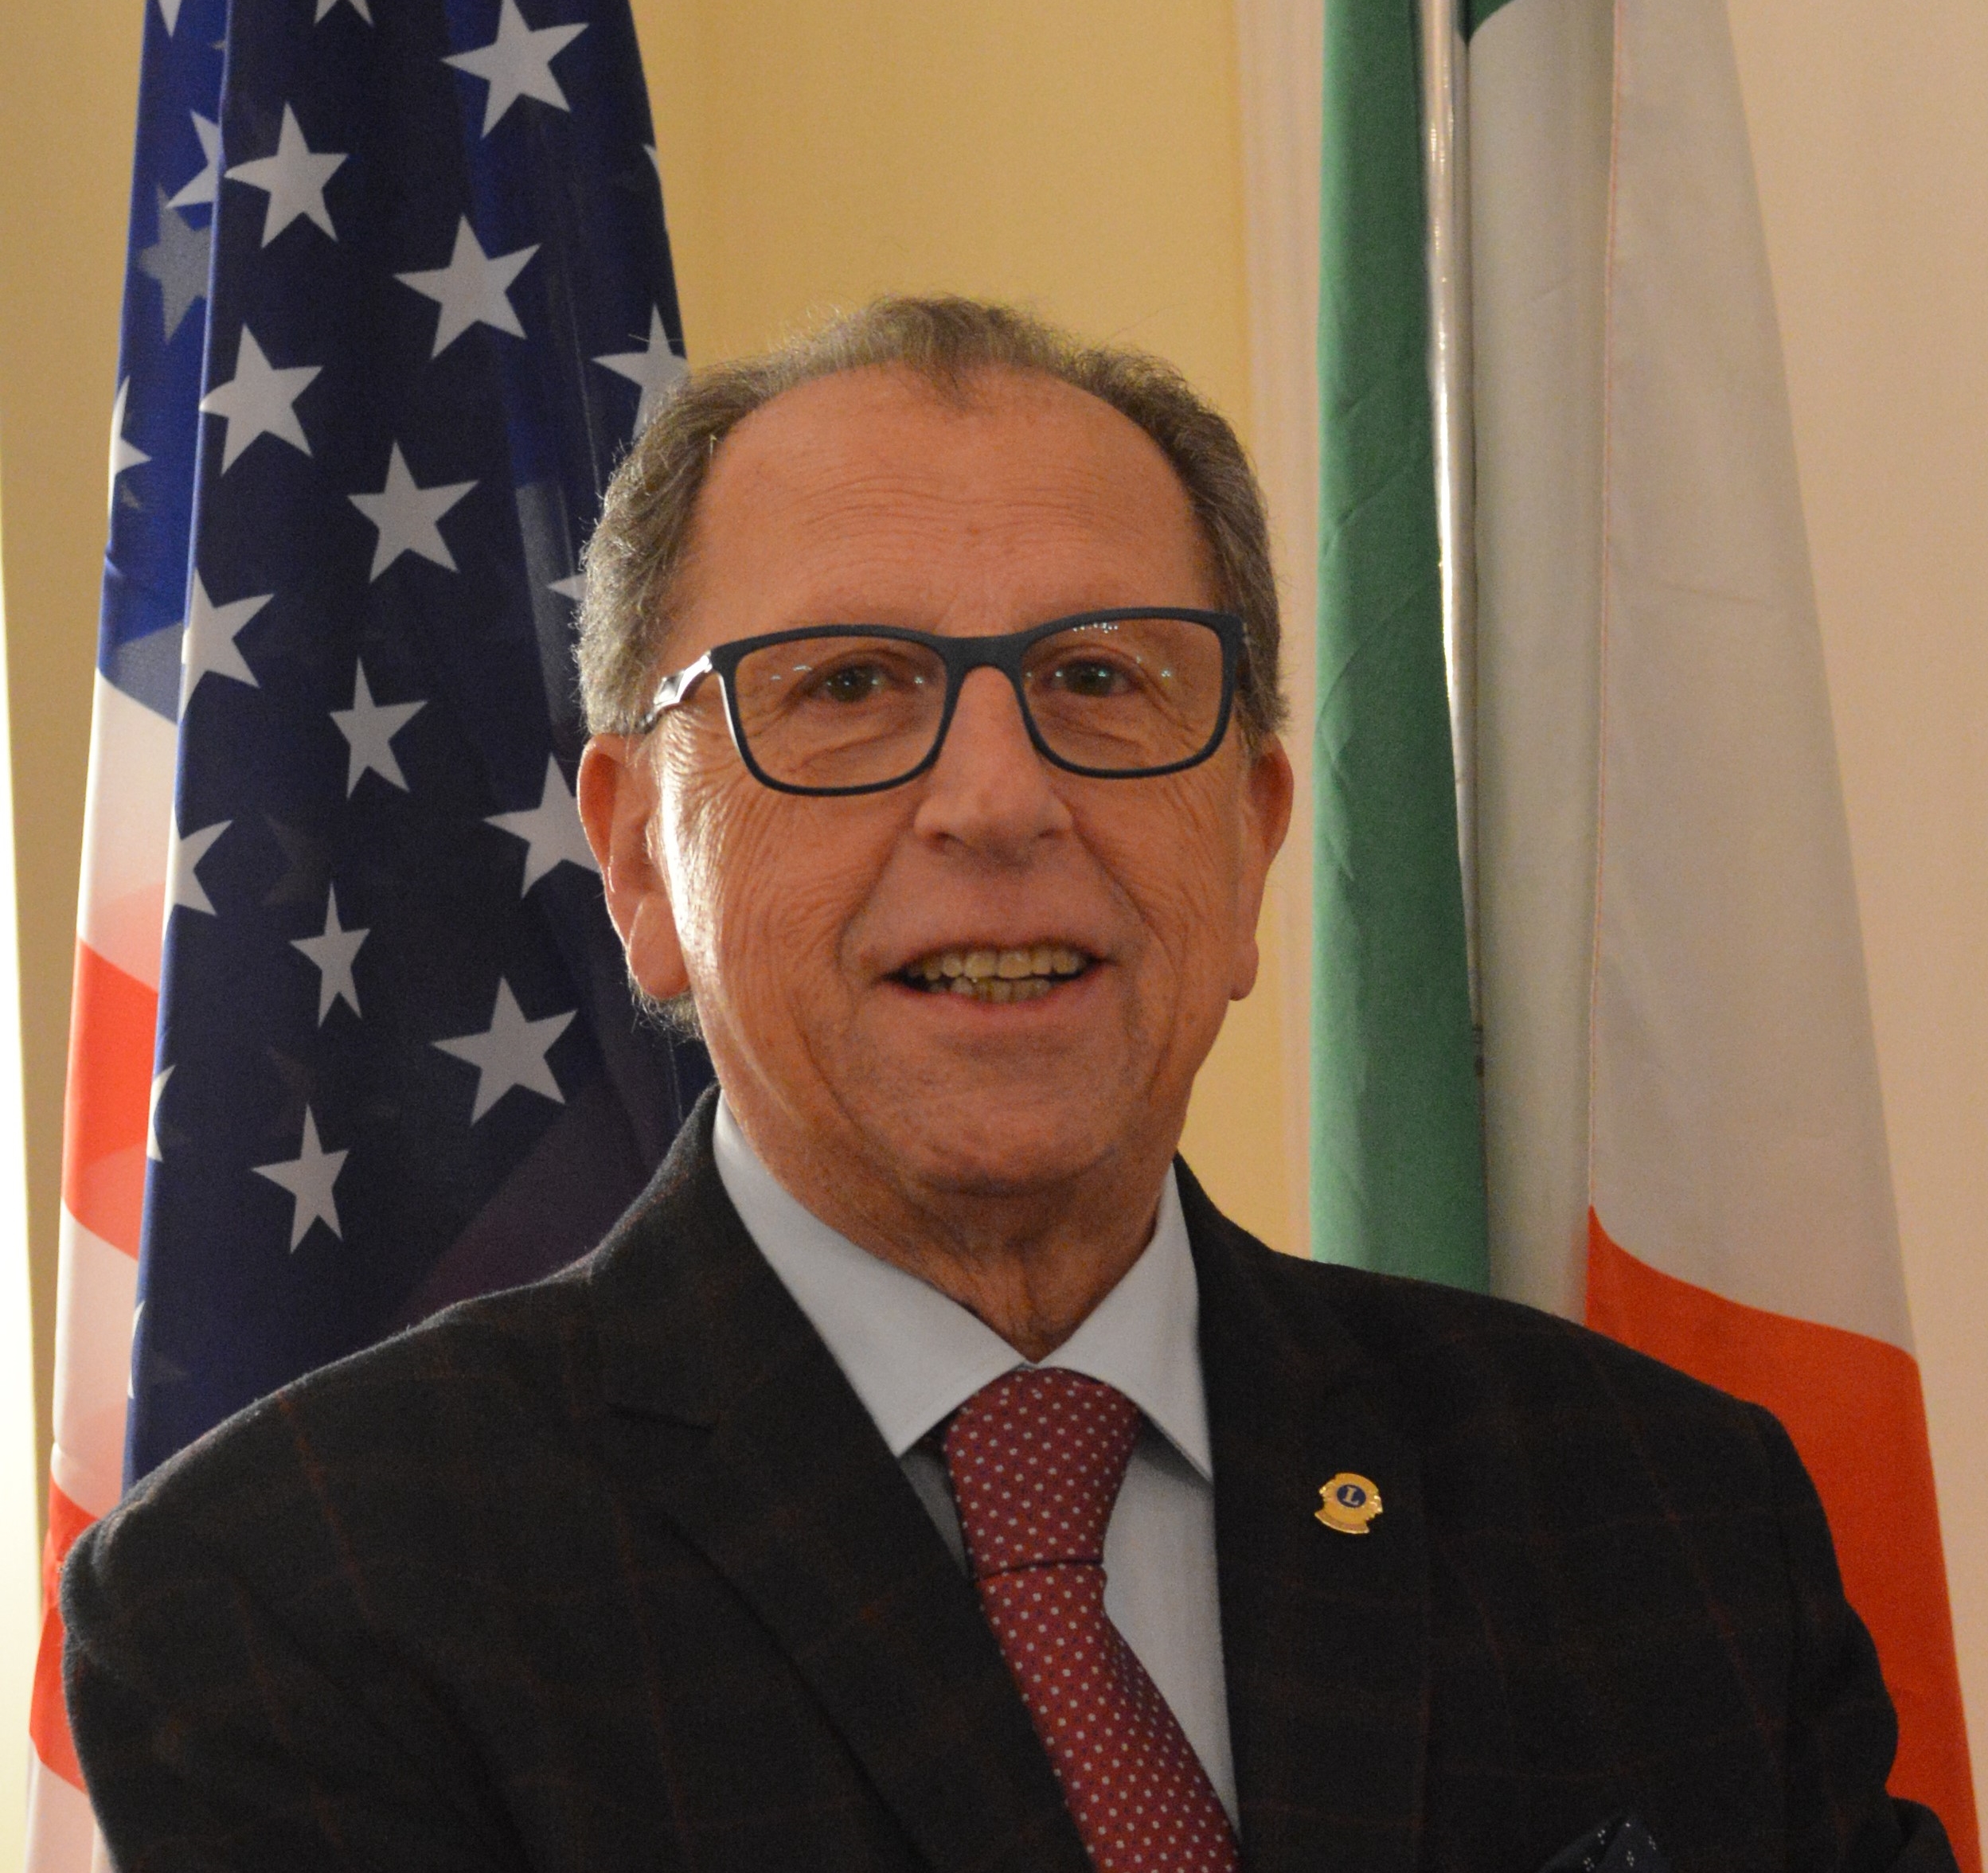 Maurizio Gibilaro è il nuovo Governatore Lions del Distretto Yb Sicilia